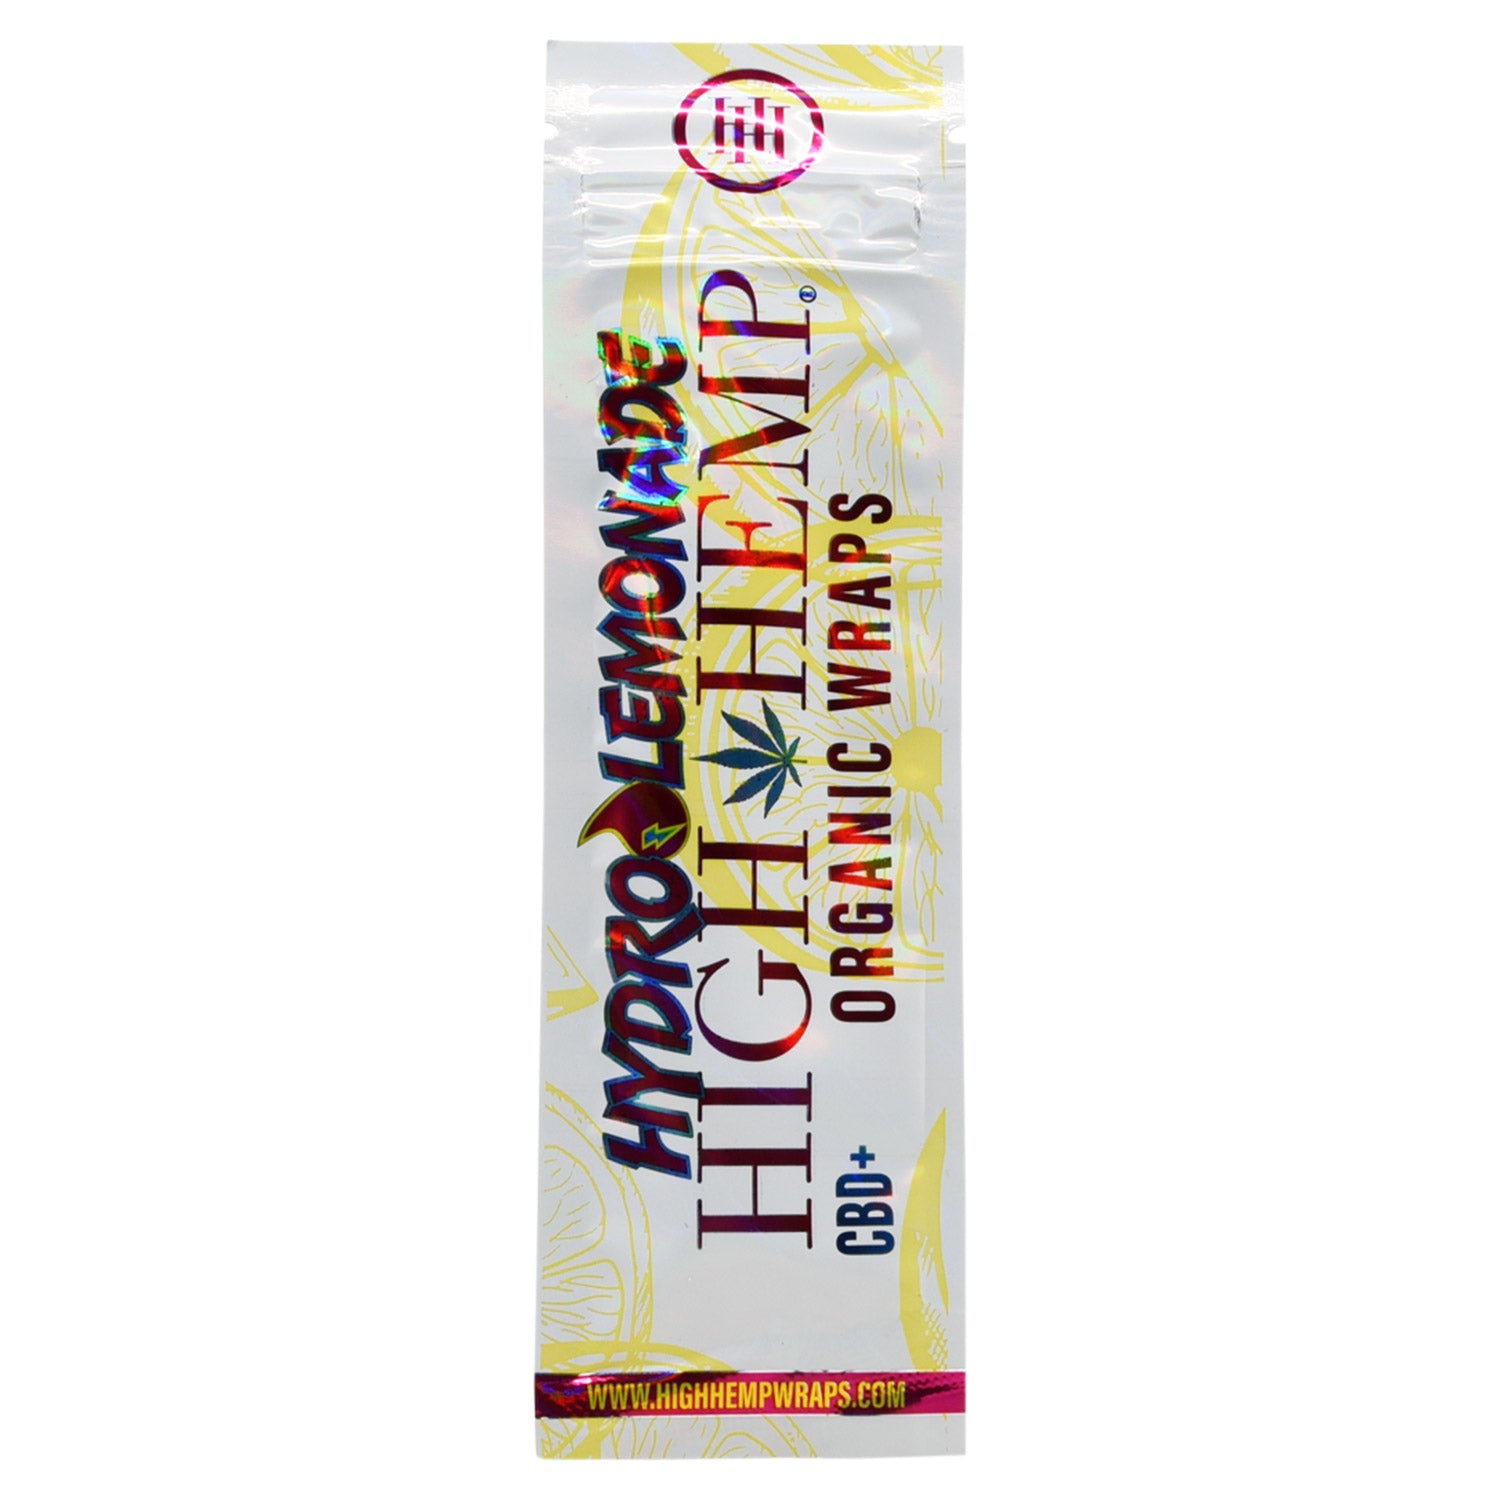 High Hemp - Organic Hemp Wraps 2ct